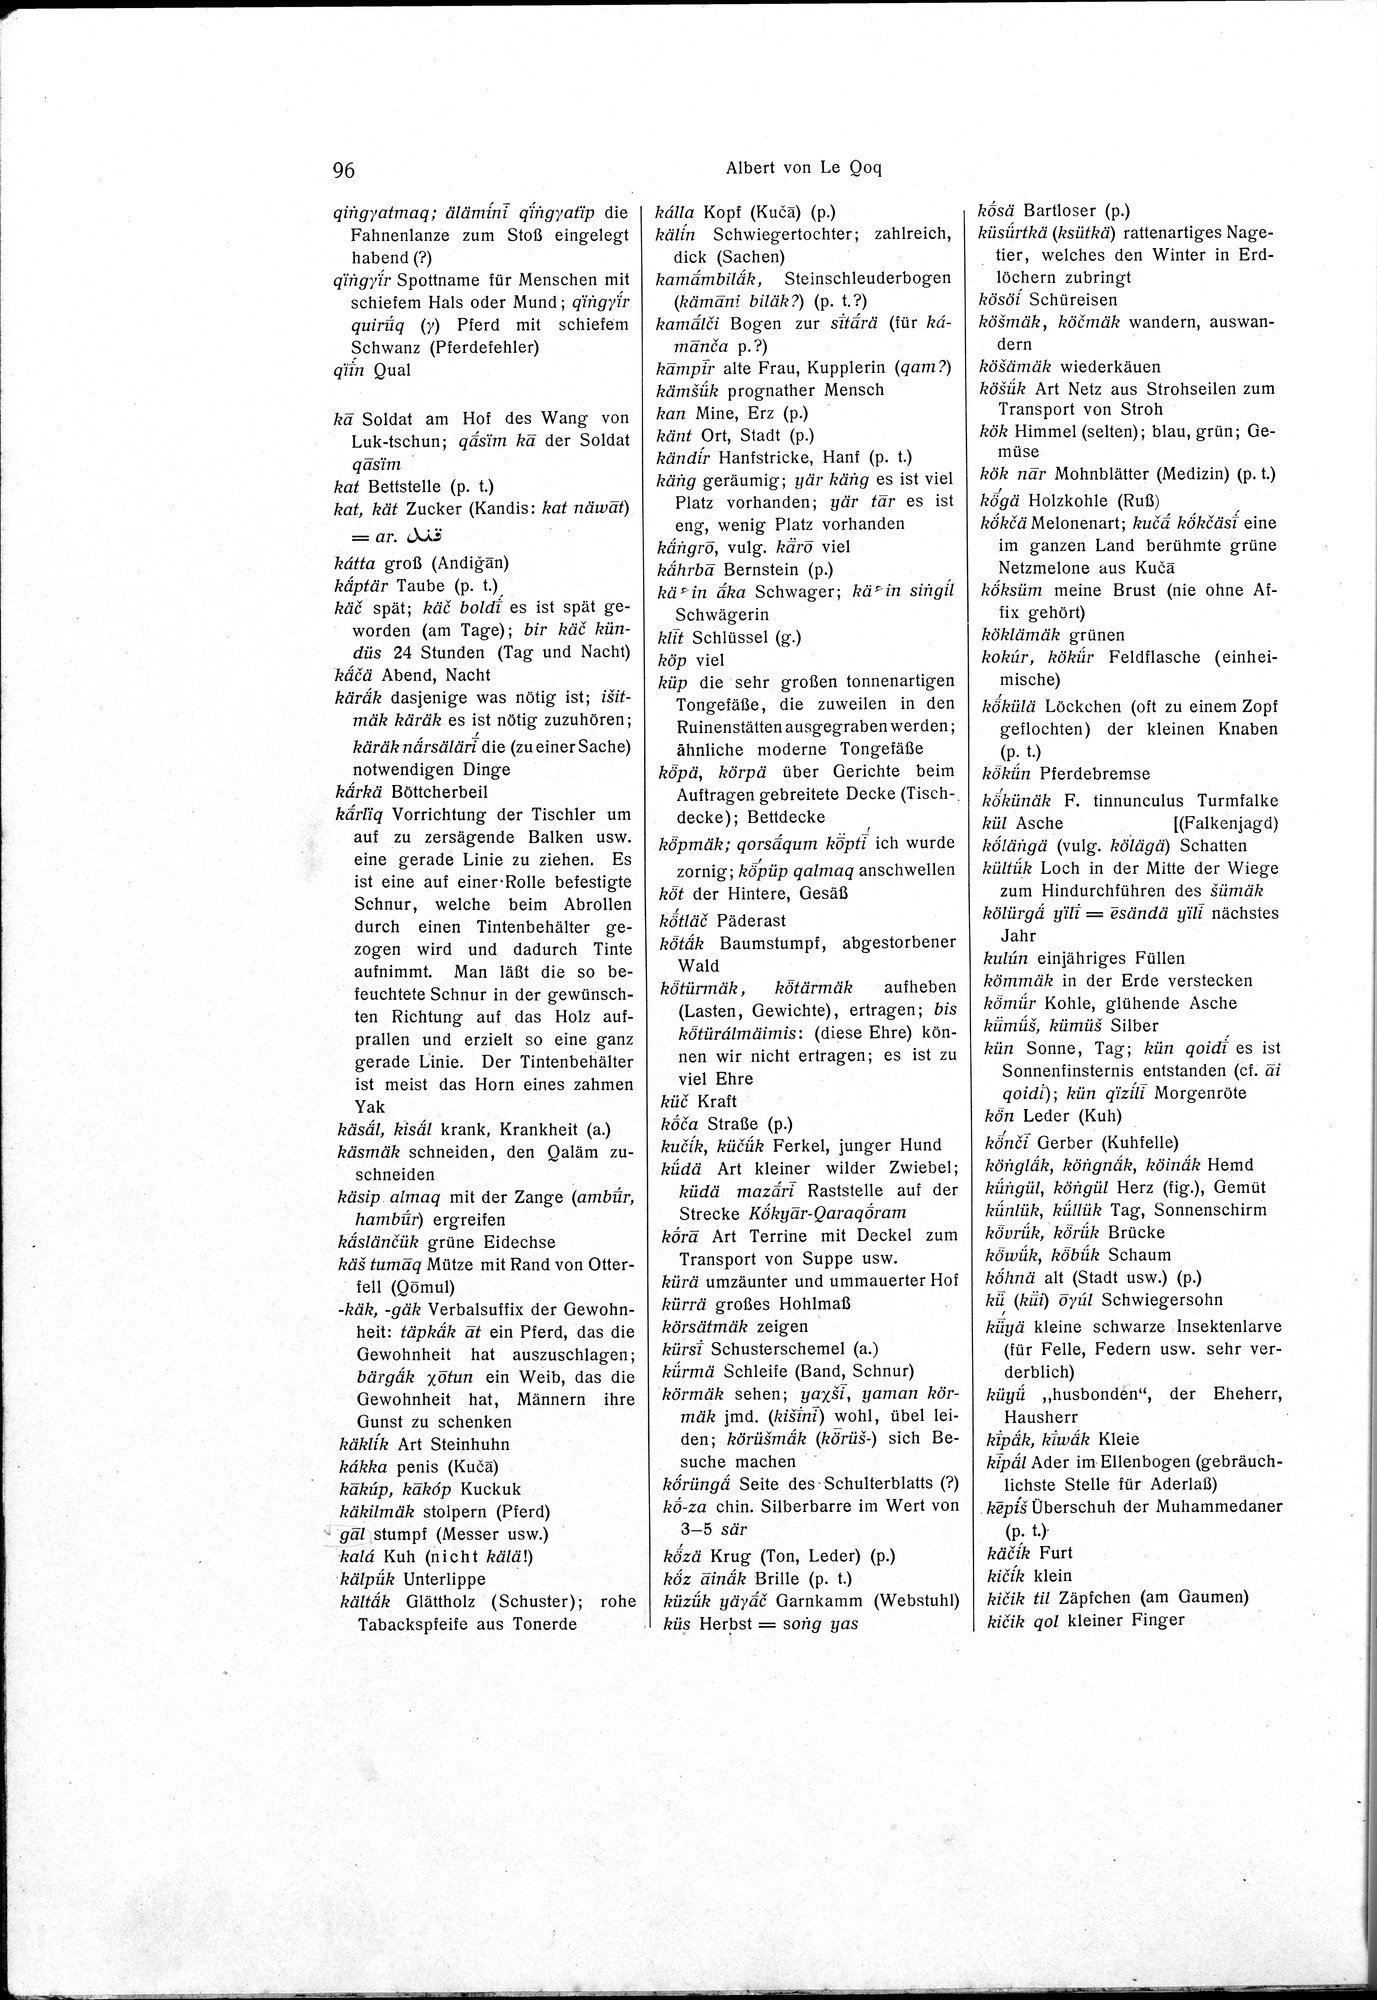 Sprichwörter und Lieder aus der Gegend von Turfan : vol.1 / Page 110 (Grayscale High Resolution Image)